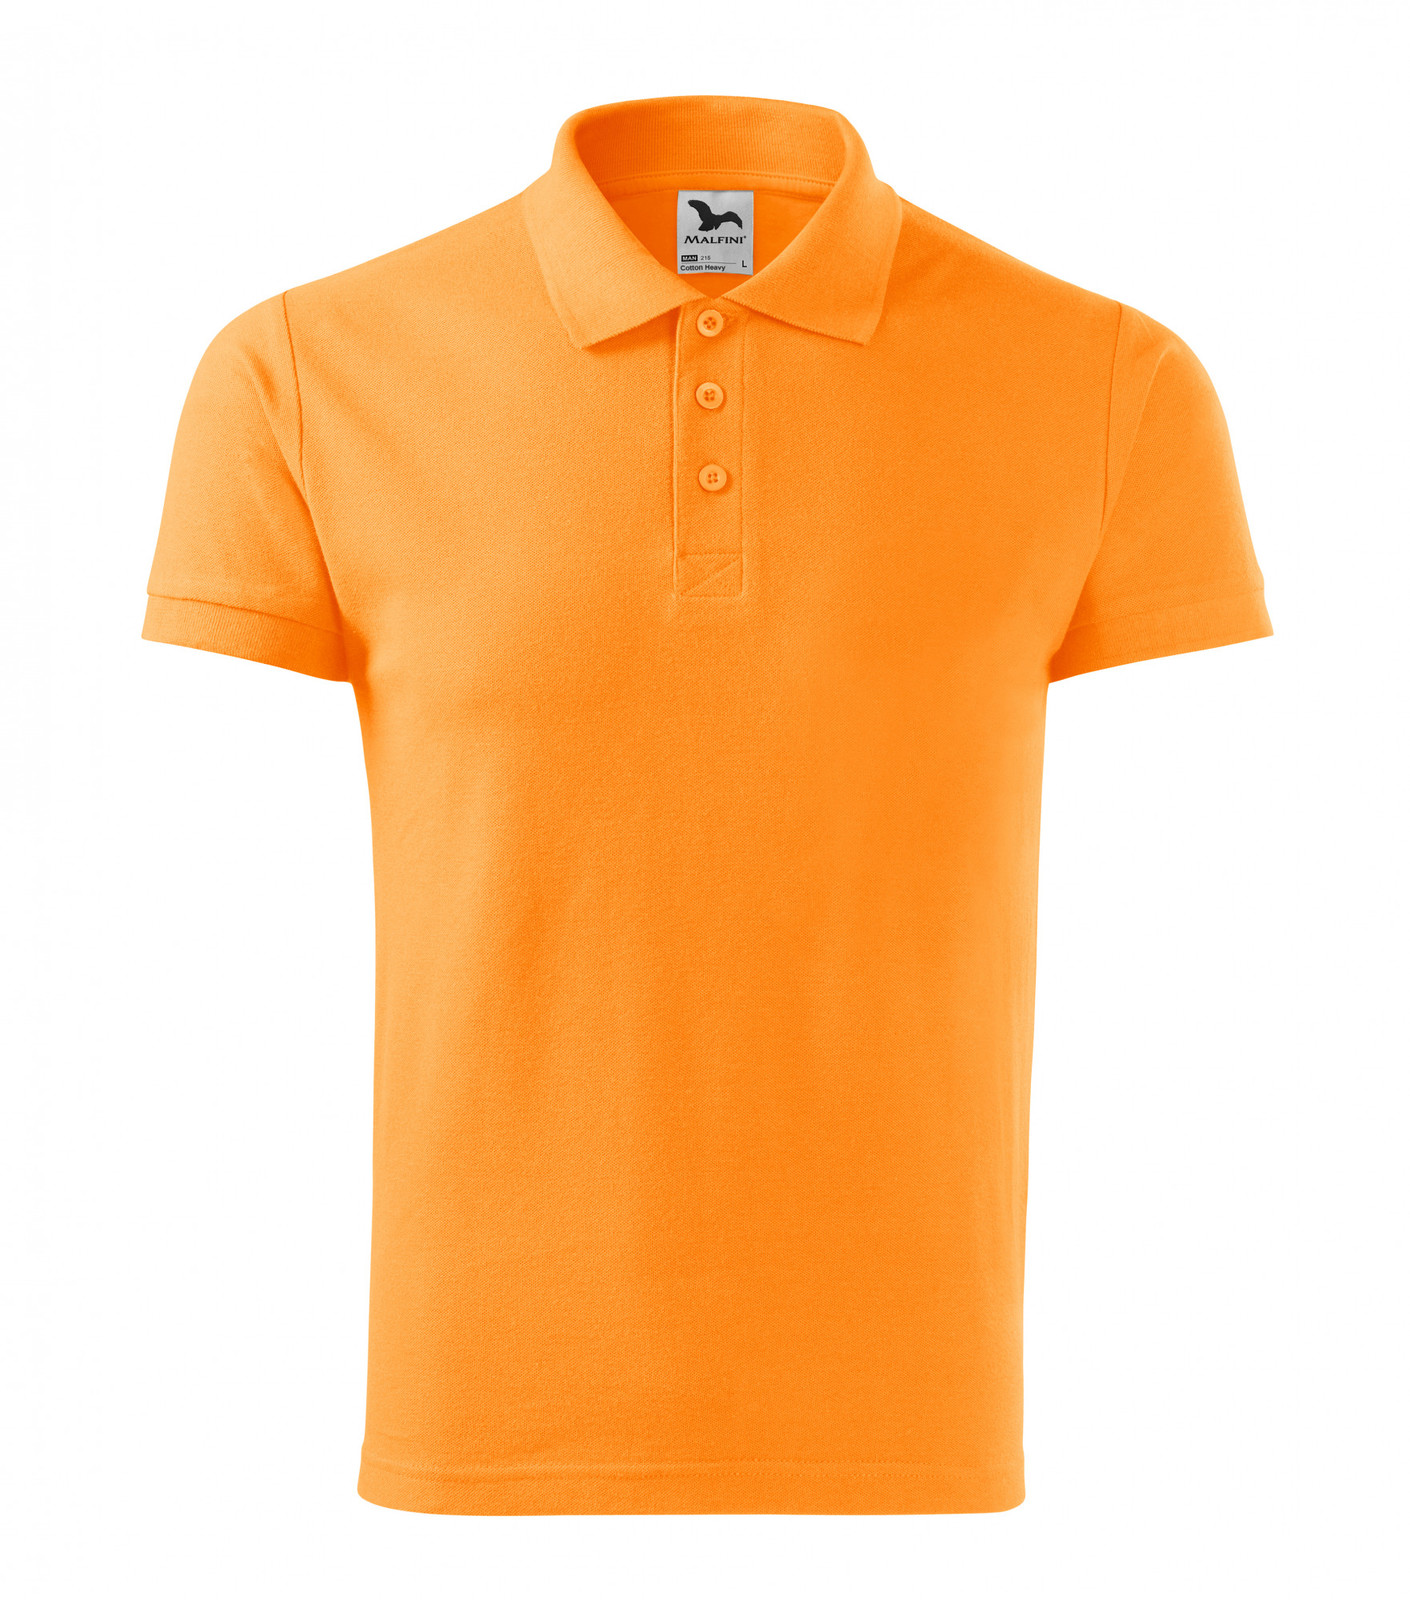 Pánska bavlnená polokošeľa Adler Cotton Heavy 215 - veľkosť: XL, farba: mandarínková oranžová